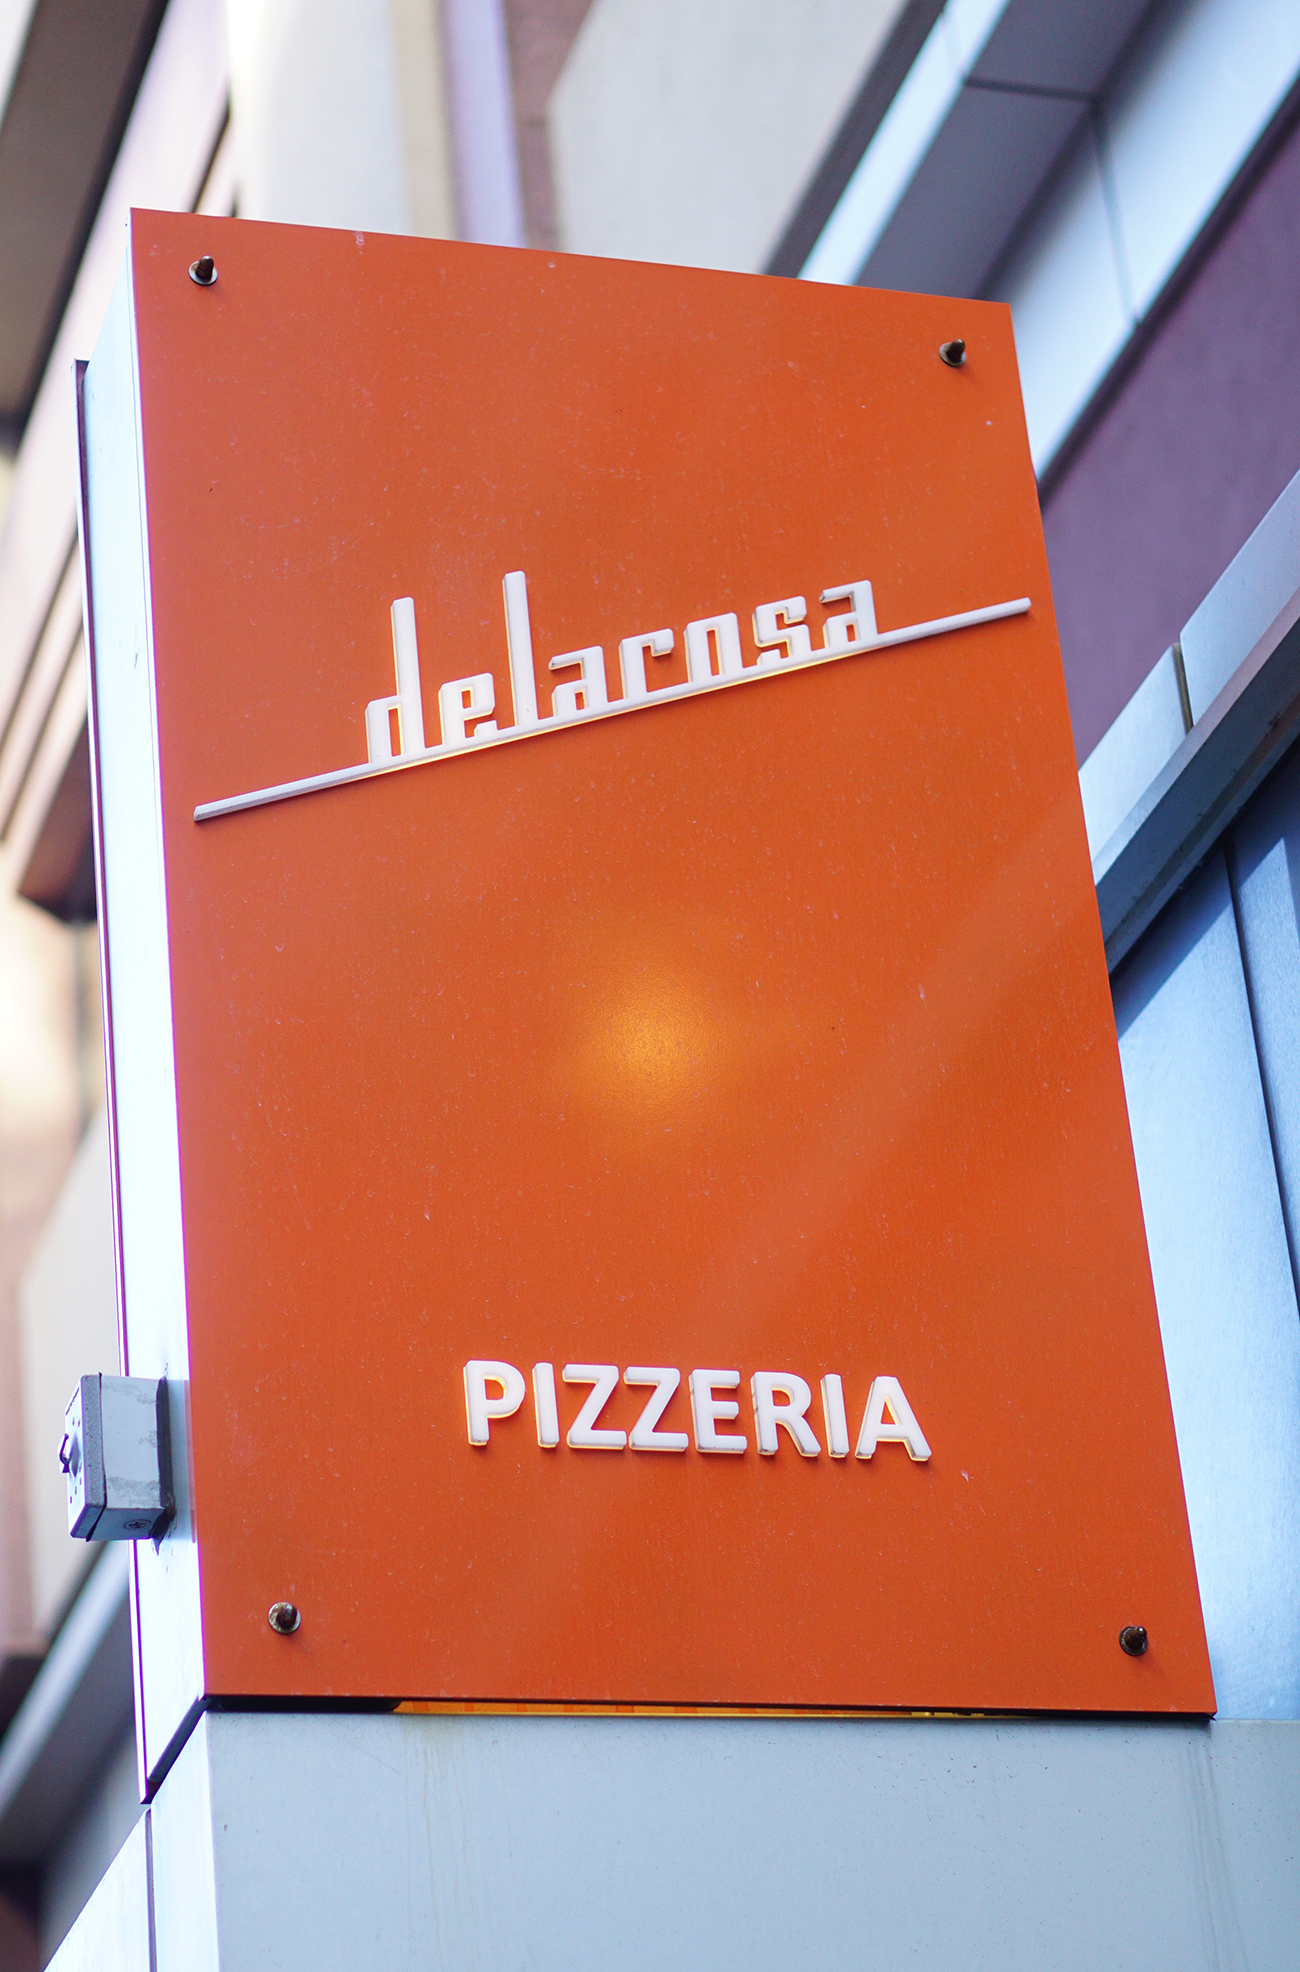 delarose-pizzeria